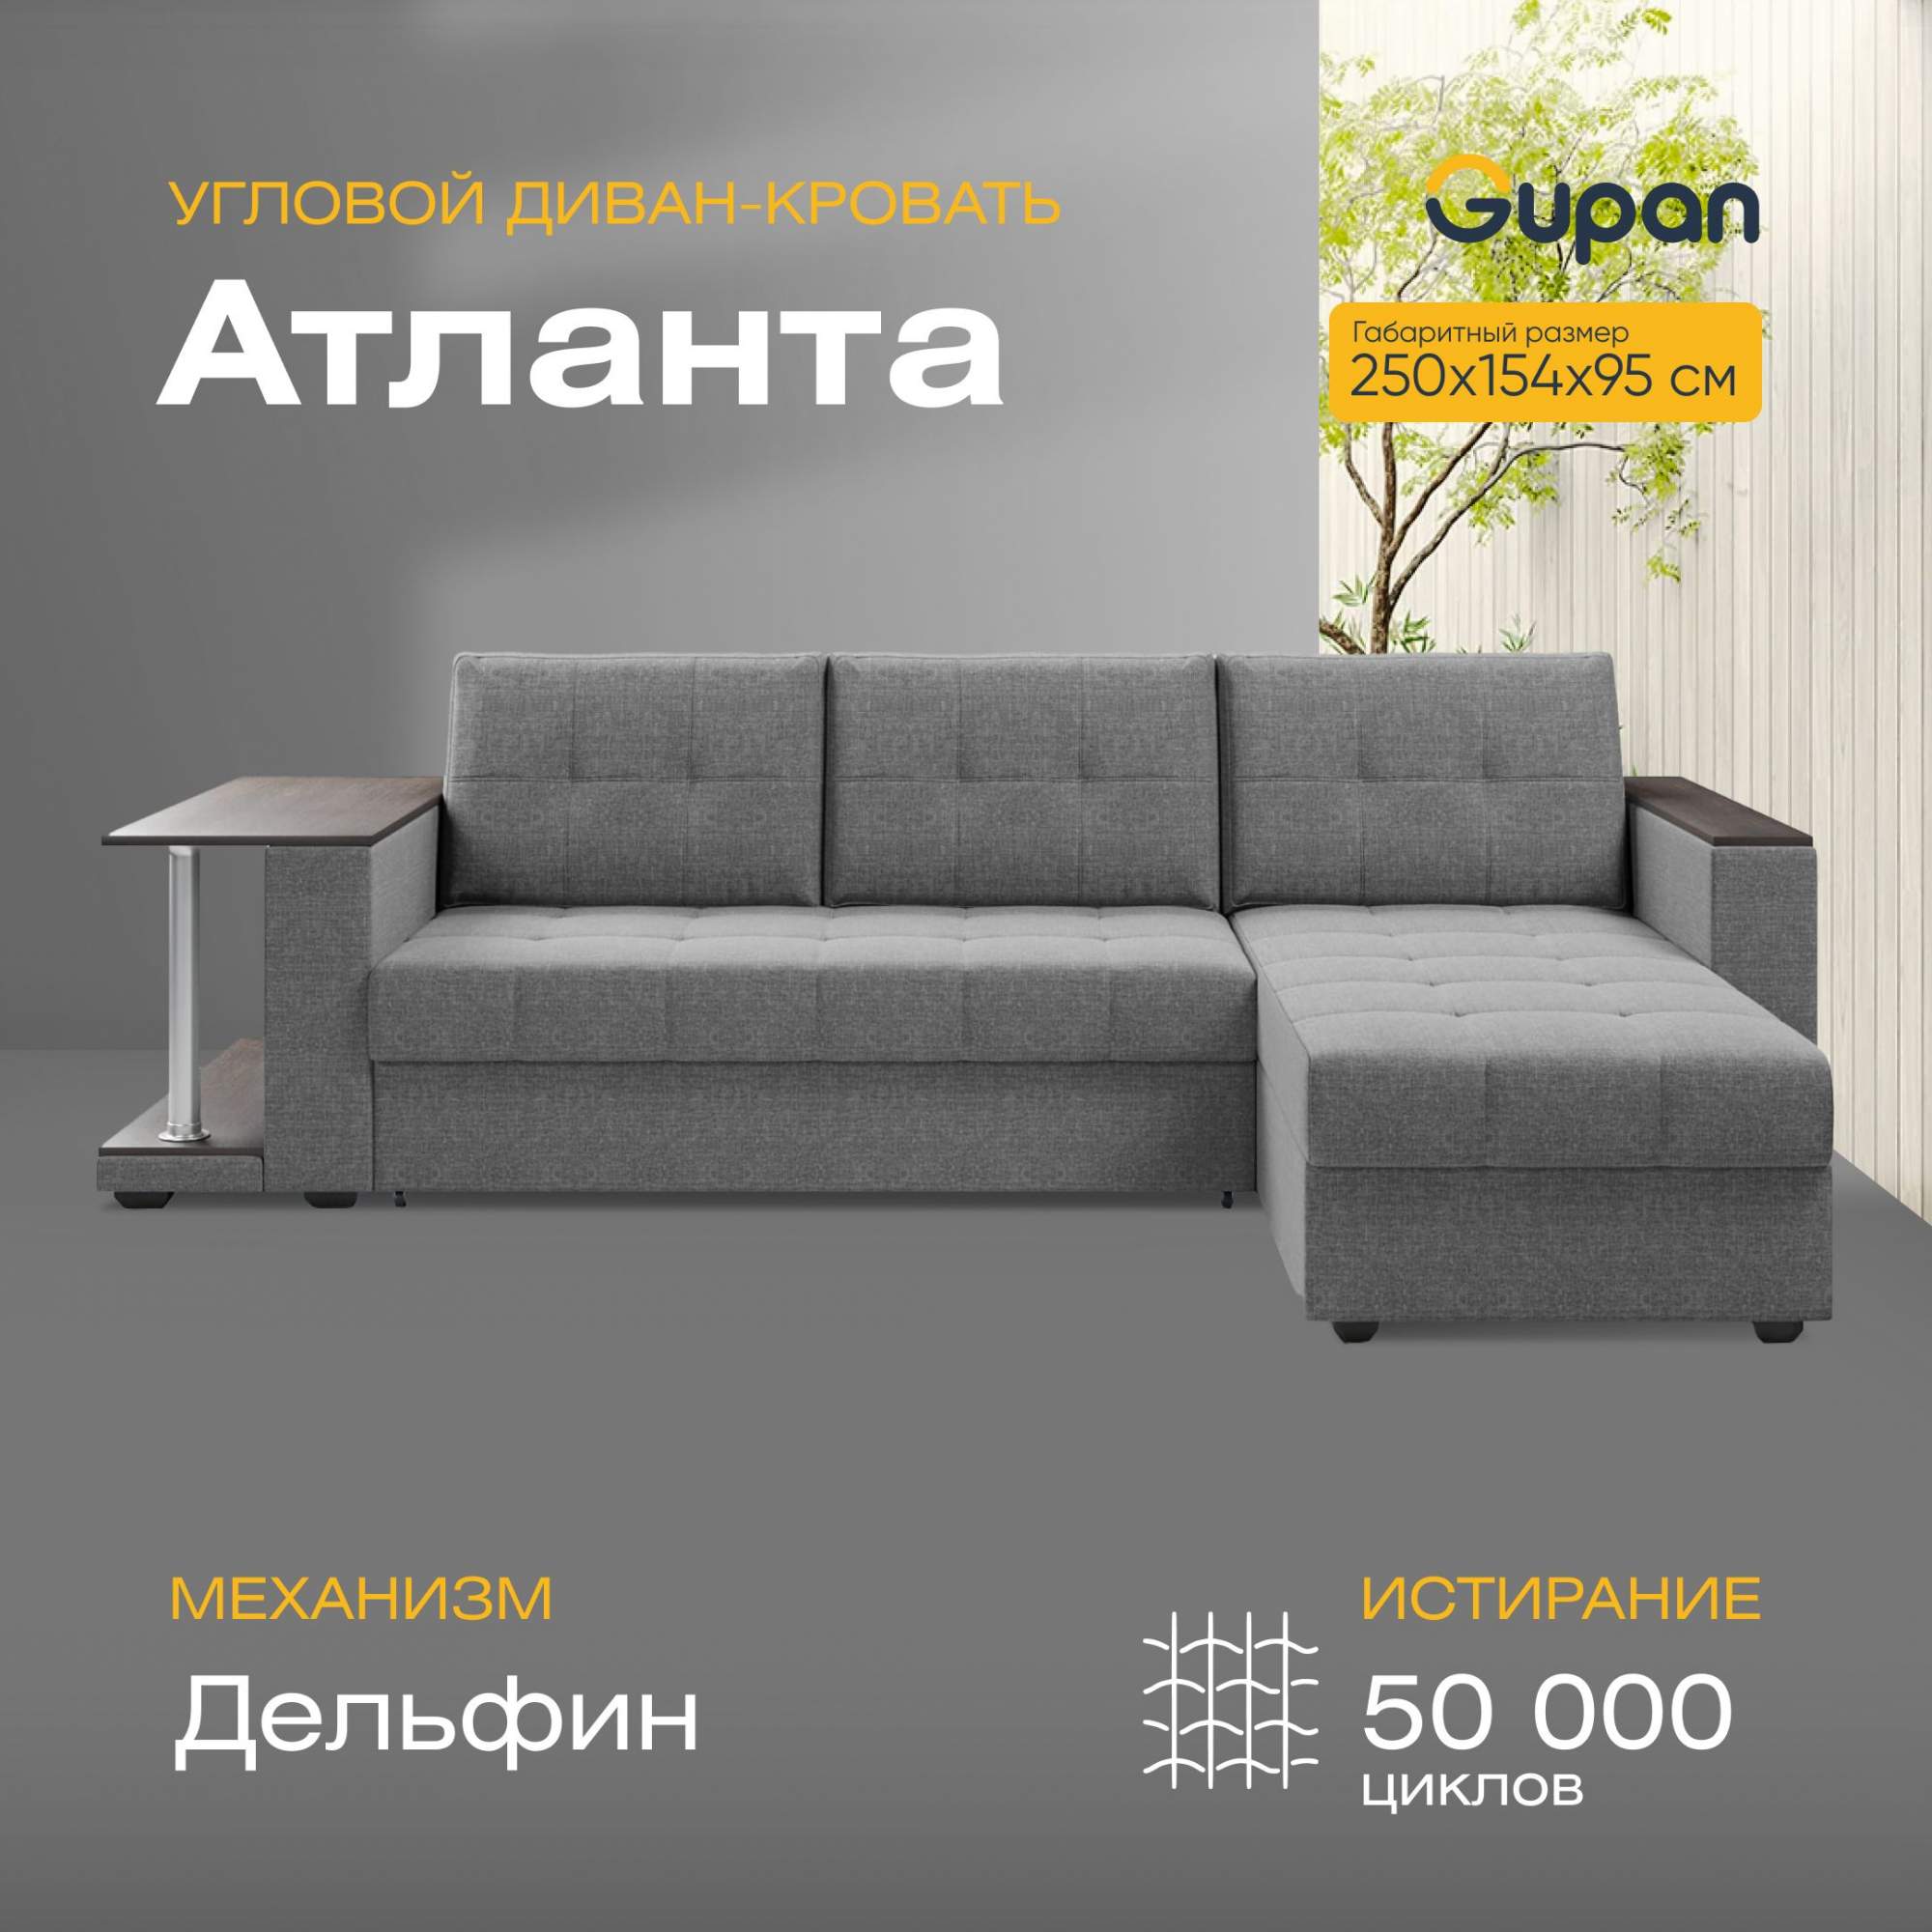 Угловой диван-кровать Gupan Атланта Классик Люкс, цвет Grey, угол правый –купить в Москве, цены в интернет-магазинах на Мегамаркет